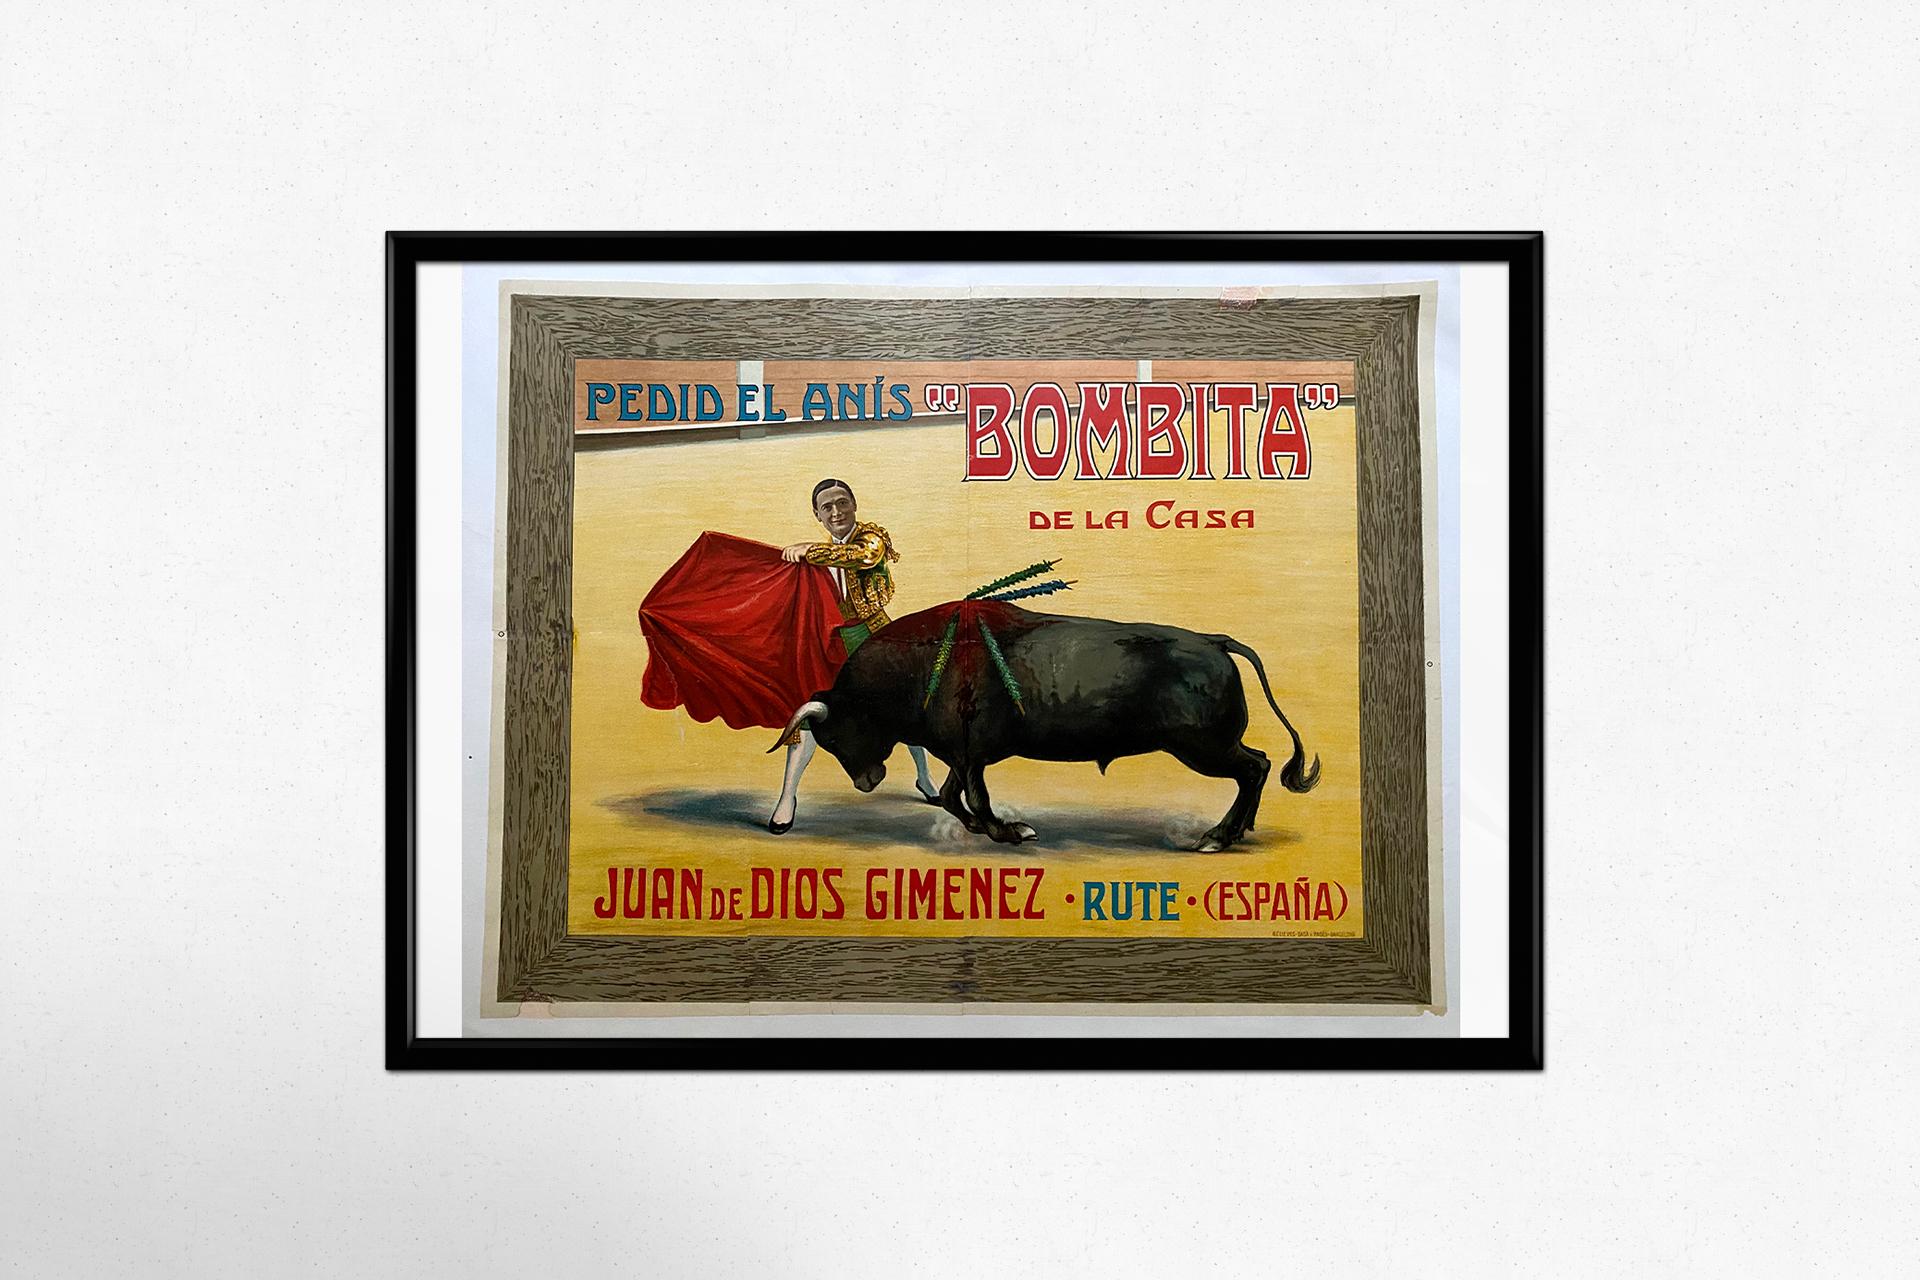 Une belle affiche espagnole représentant la tauromachie. C'est une tradition ancienne qui représente la manière d'affronter le taureau, soit dans des combats à l'issue desquels le taureau est mis à mort, soit dans des jeux, sportifs ou burlesques